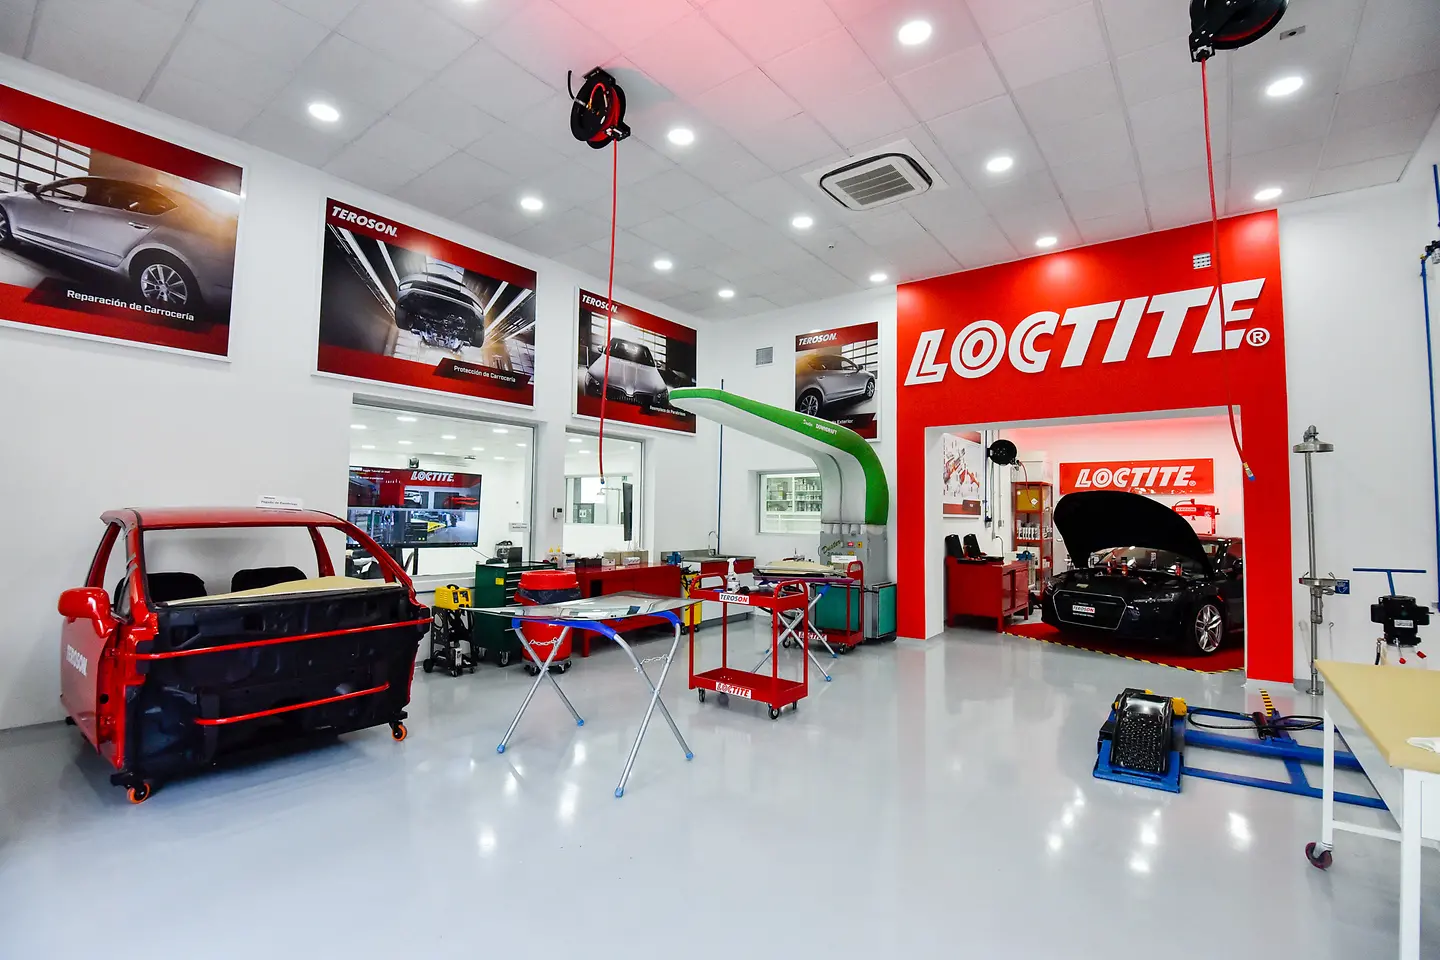 Centro de entrenamiento y aplicaciones en reparación para la industria automotriz - Vista Loctite